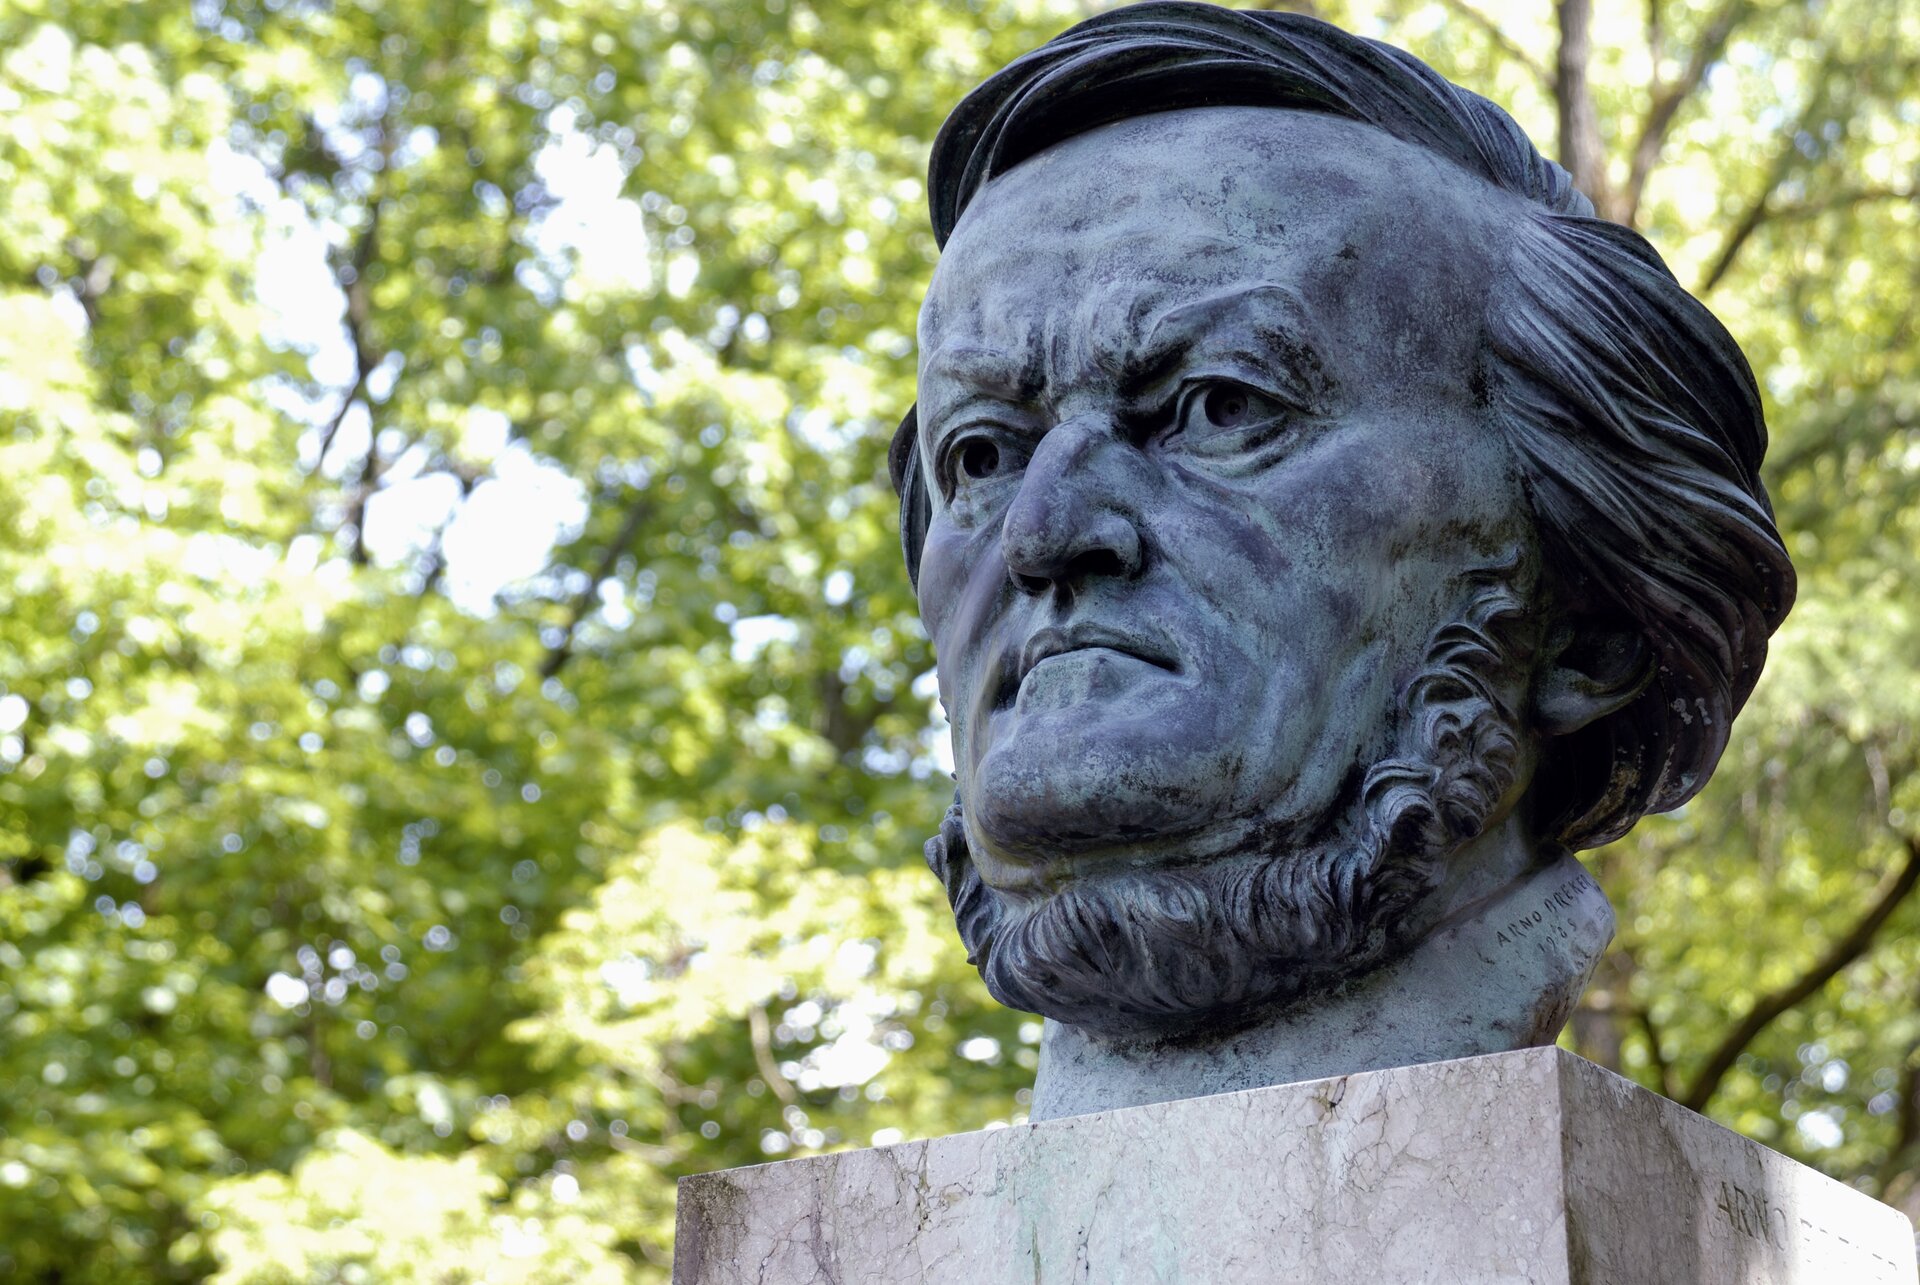 Ilustracja przedstawia pomnik Ryszarda Wagnera. Na zdjęciu widoczna jest odlana z brązu głowa kompozytora, umieszczona na cokole. Rzeźba przedstawia mężczyznę w średnim wieku z lekko dłuższymi włosami i brodą.